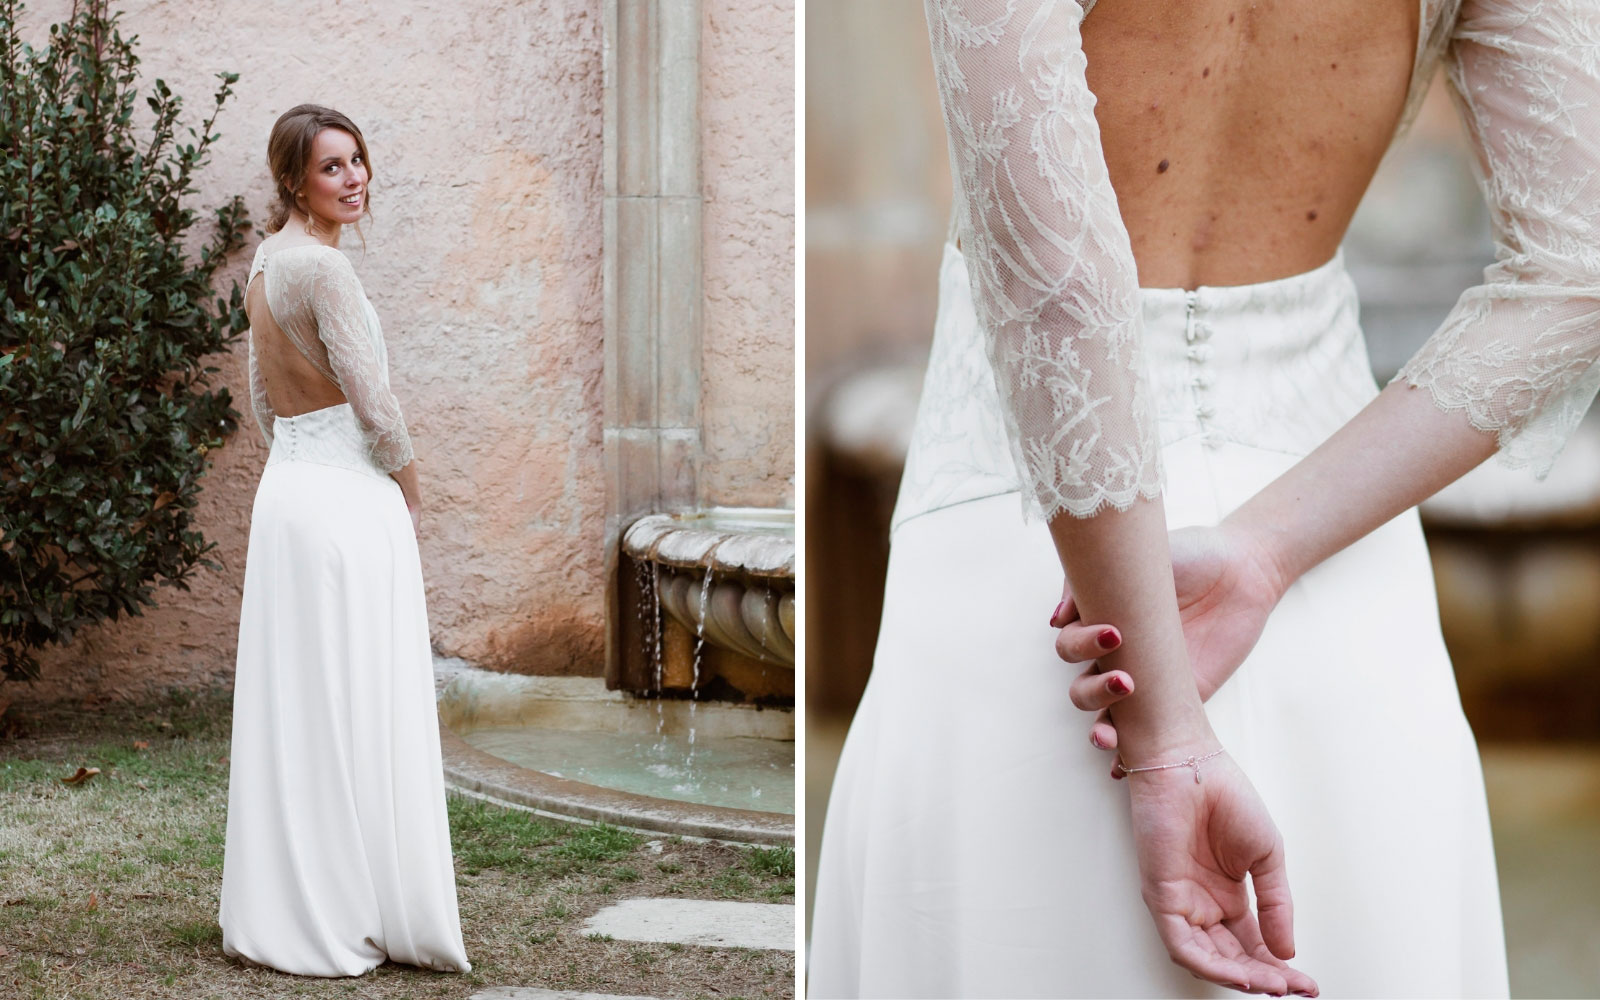 Bridal editorial with La Coquetería dresses